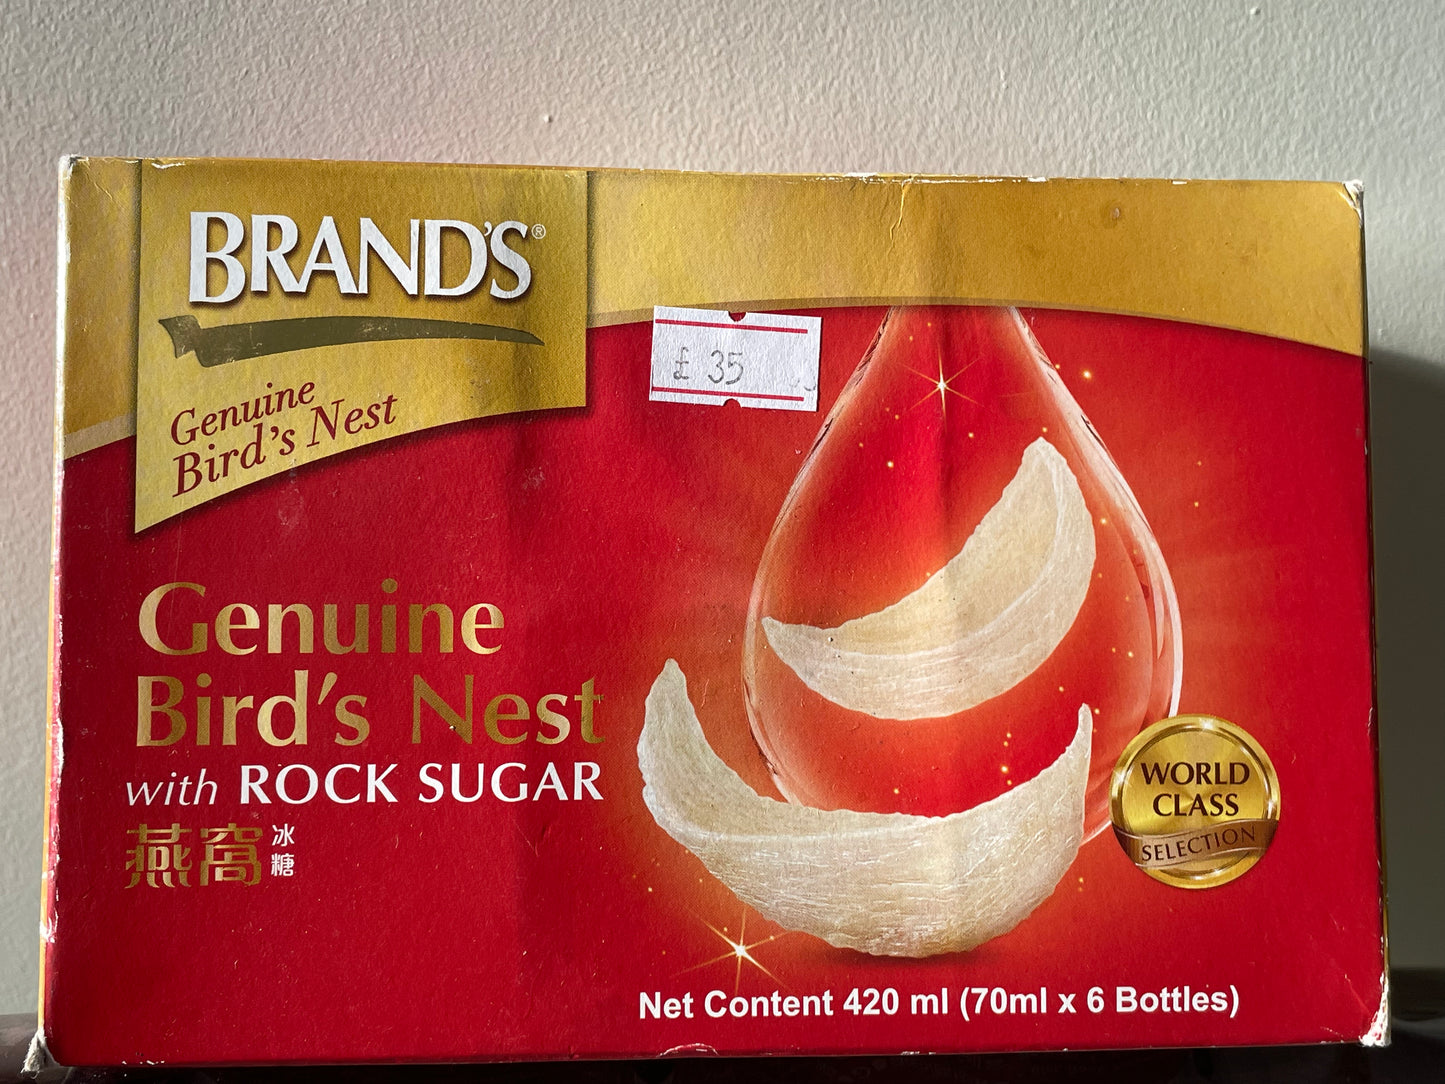 Brands Bird’s Nest with Rock Sugar